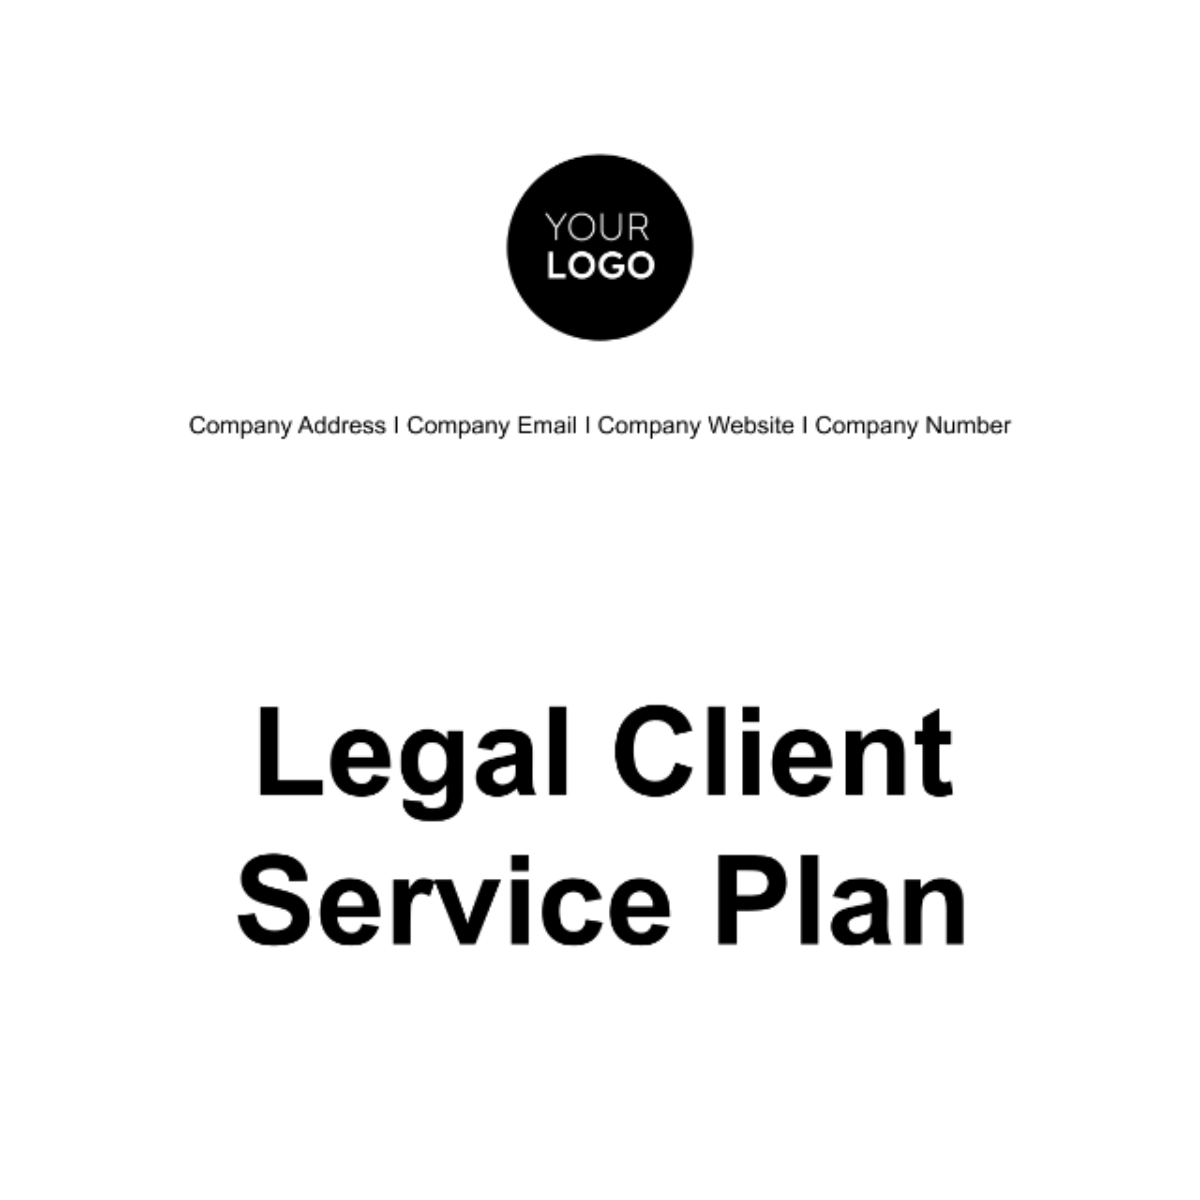 Legal Client Service Plan Template